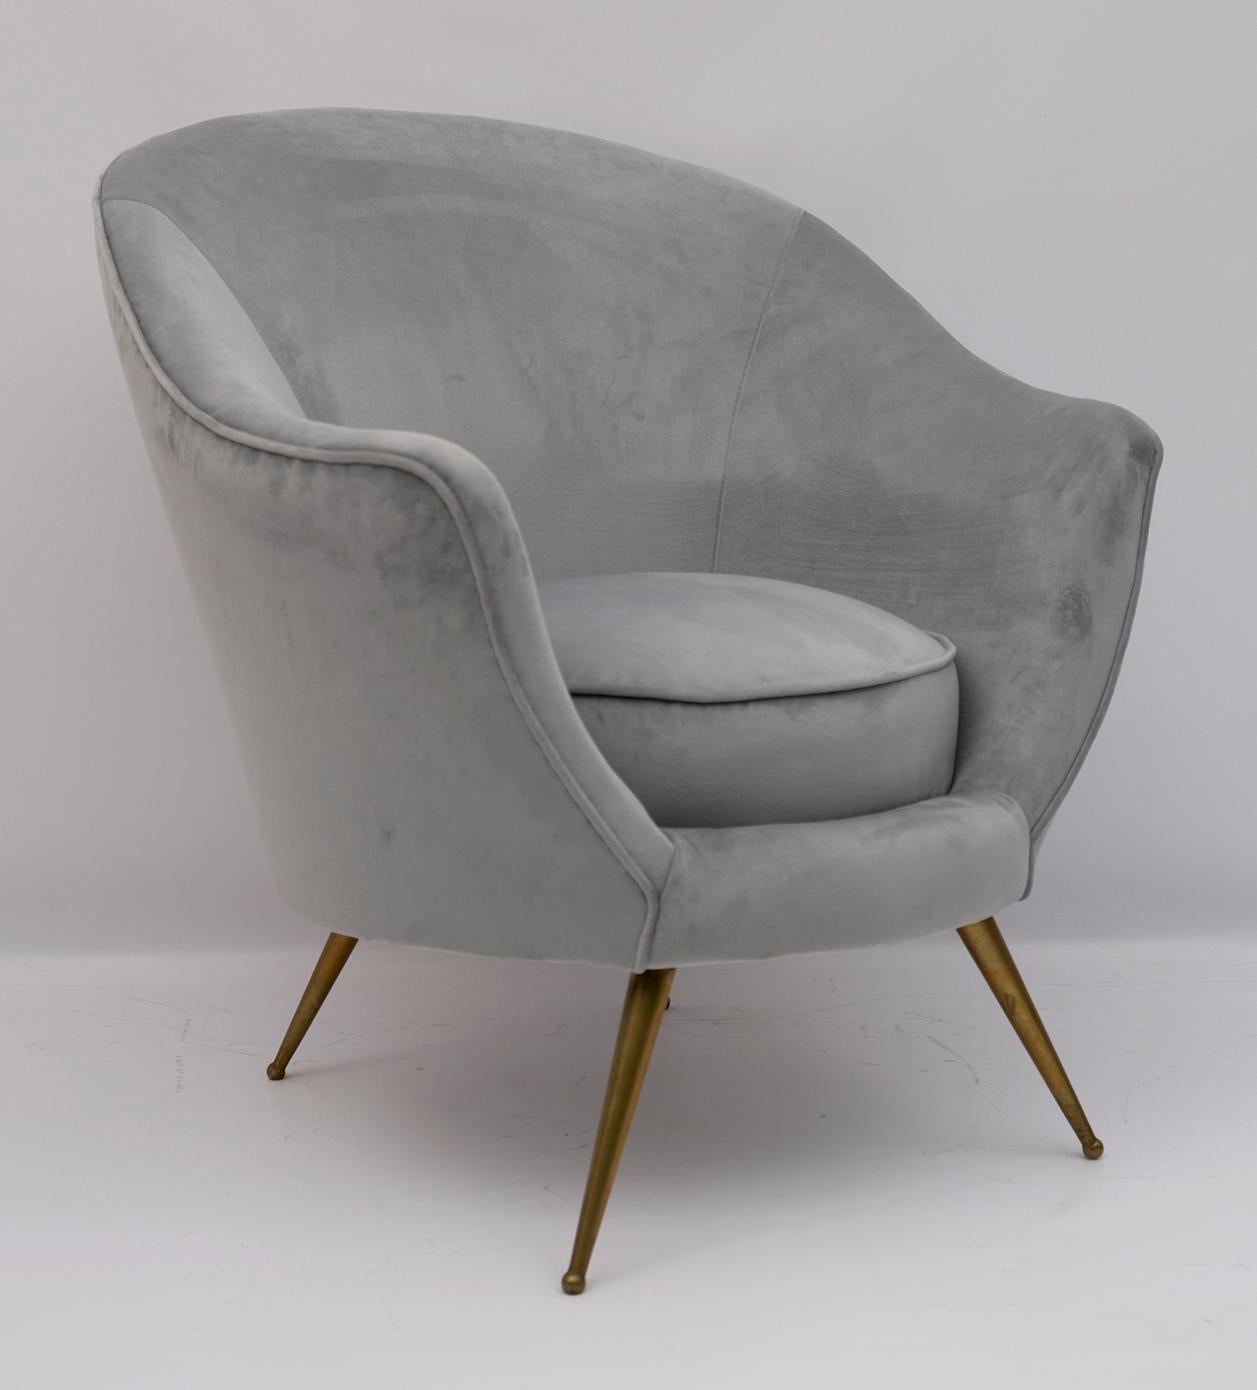 Belle paire de fauteuils conçue par Federico Munari au début des années 1950. La tapisserie a été refaite en velours.

Le prix se réfère au fauteuil simple.